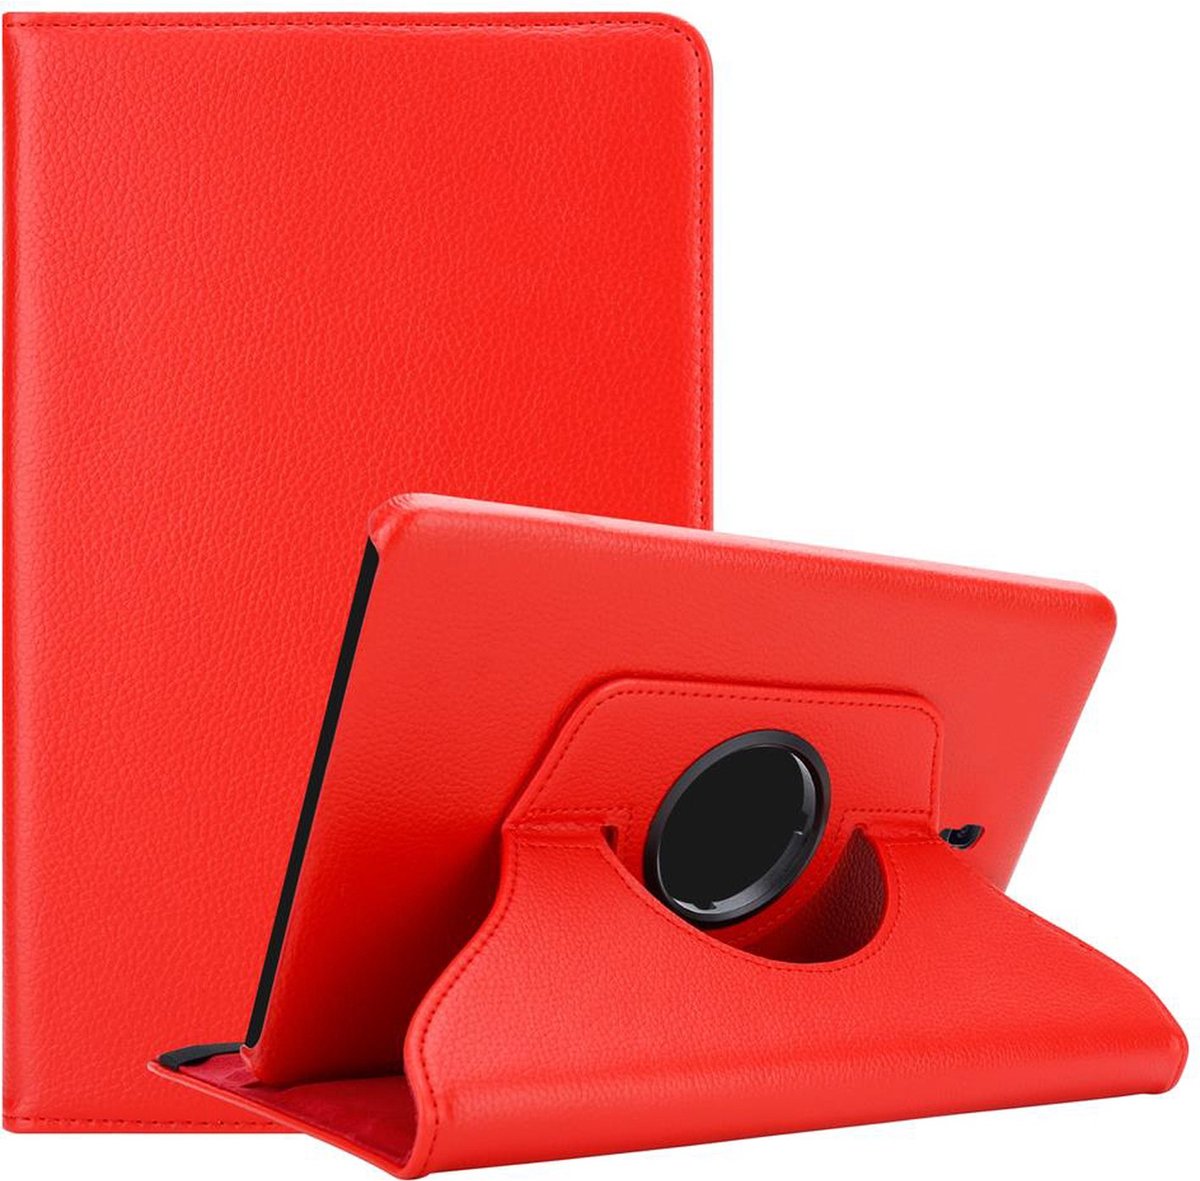 Cadorabo Tablet Hoesje voor Samsung Galaxy Tab A (10.5 inch) in KLAPROOS ROOD - Beschermhoes ZONDER auto Wake Up, met stand functie en elastische band sluiting Book Case Cover Etui